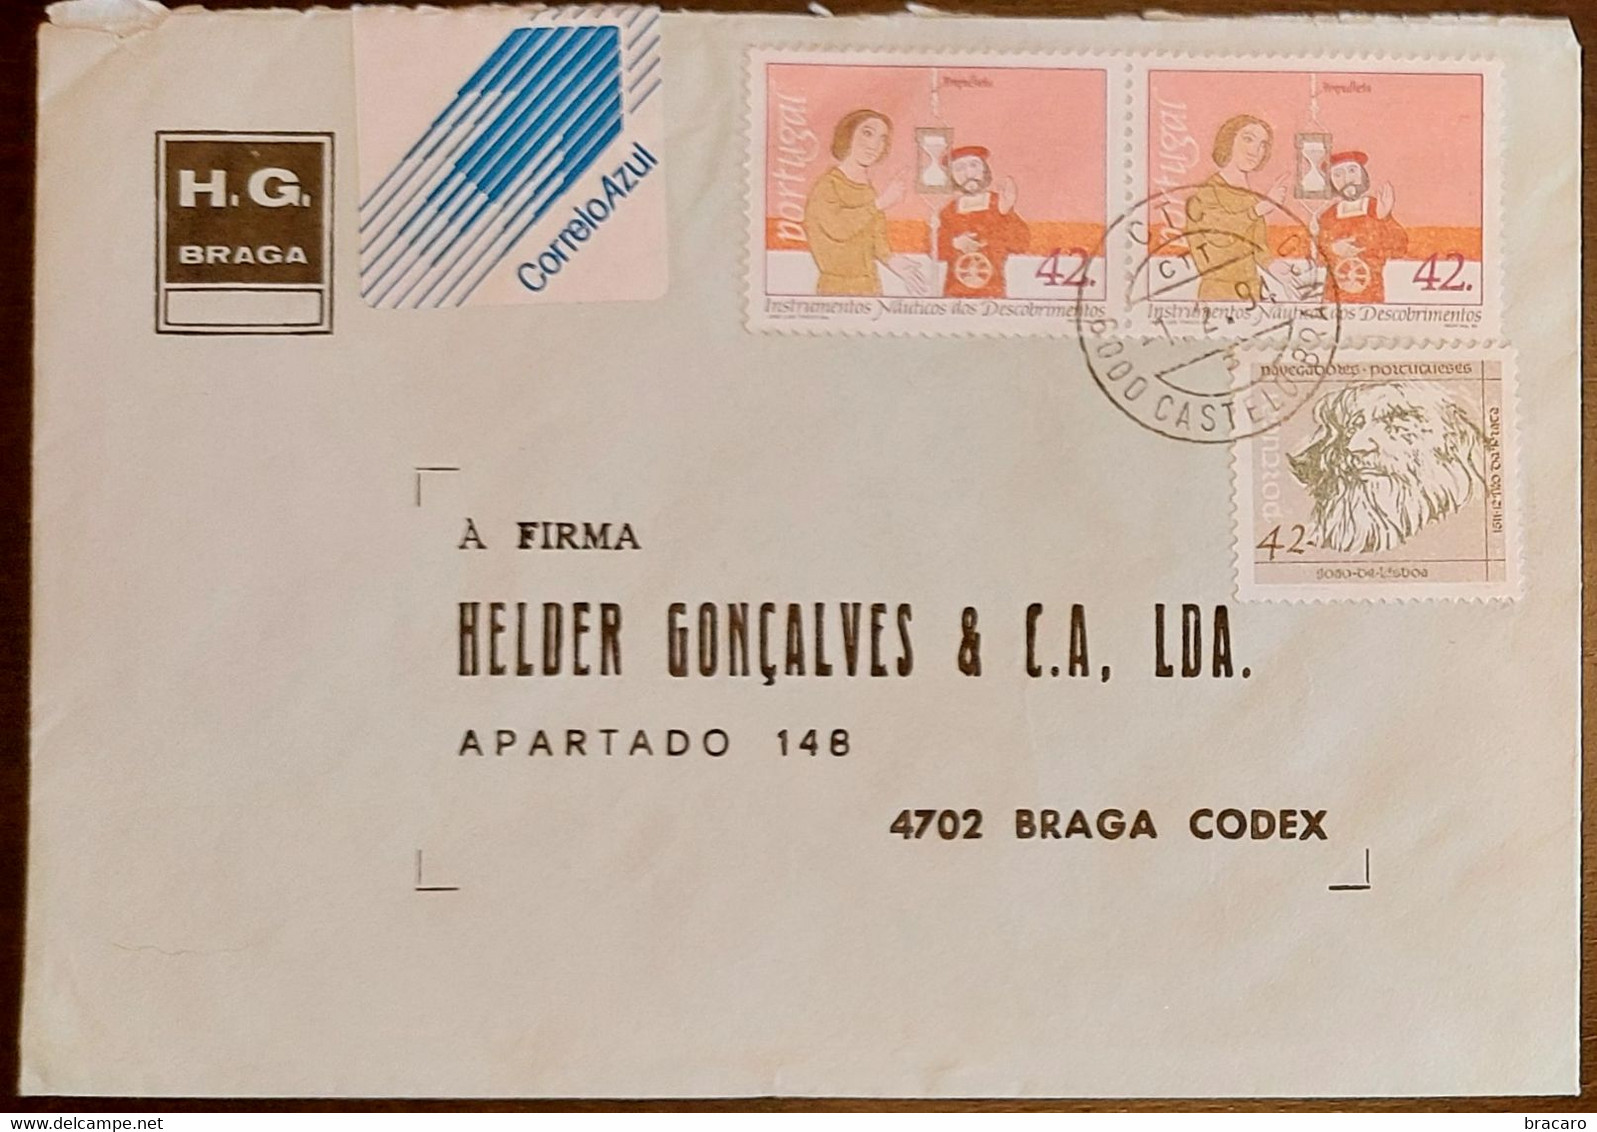 PORTUGAL - Cover 1.2.1994 - Cancel Castelo Branco - Stamps Instrumentos Náuticos + Navegadores 42$00 - H.G. Braga - Cartas & Documentos